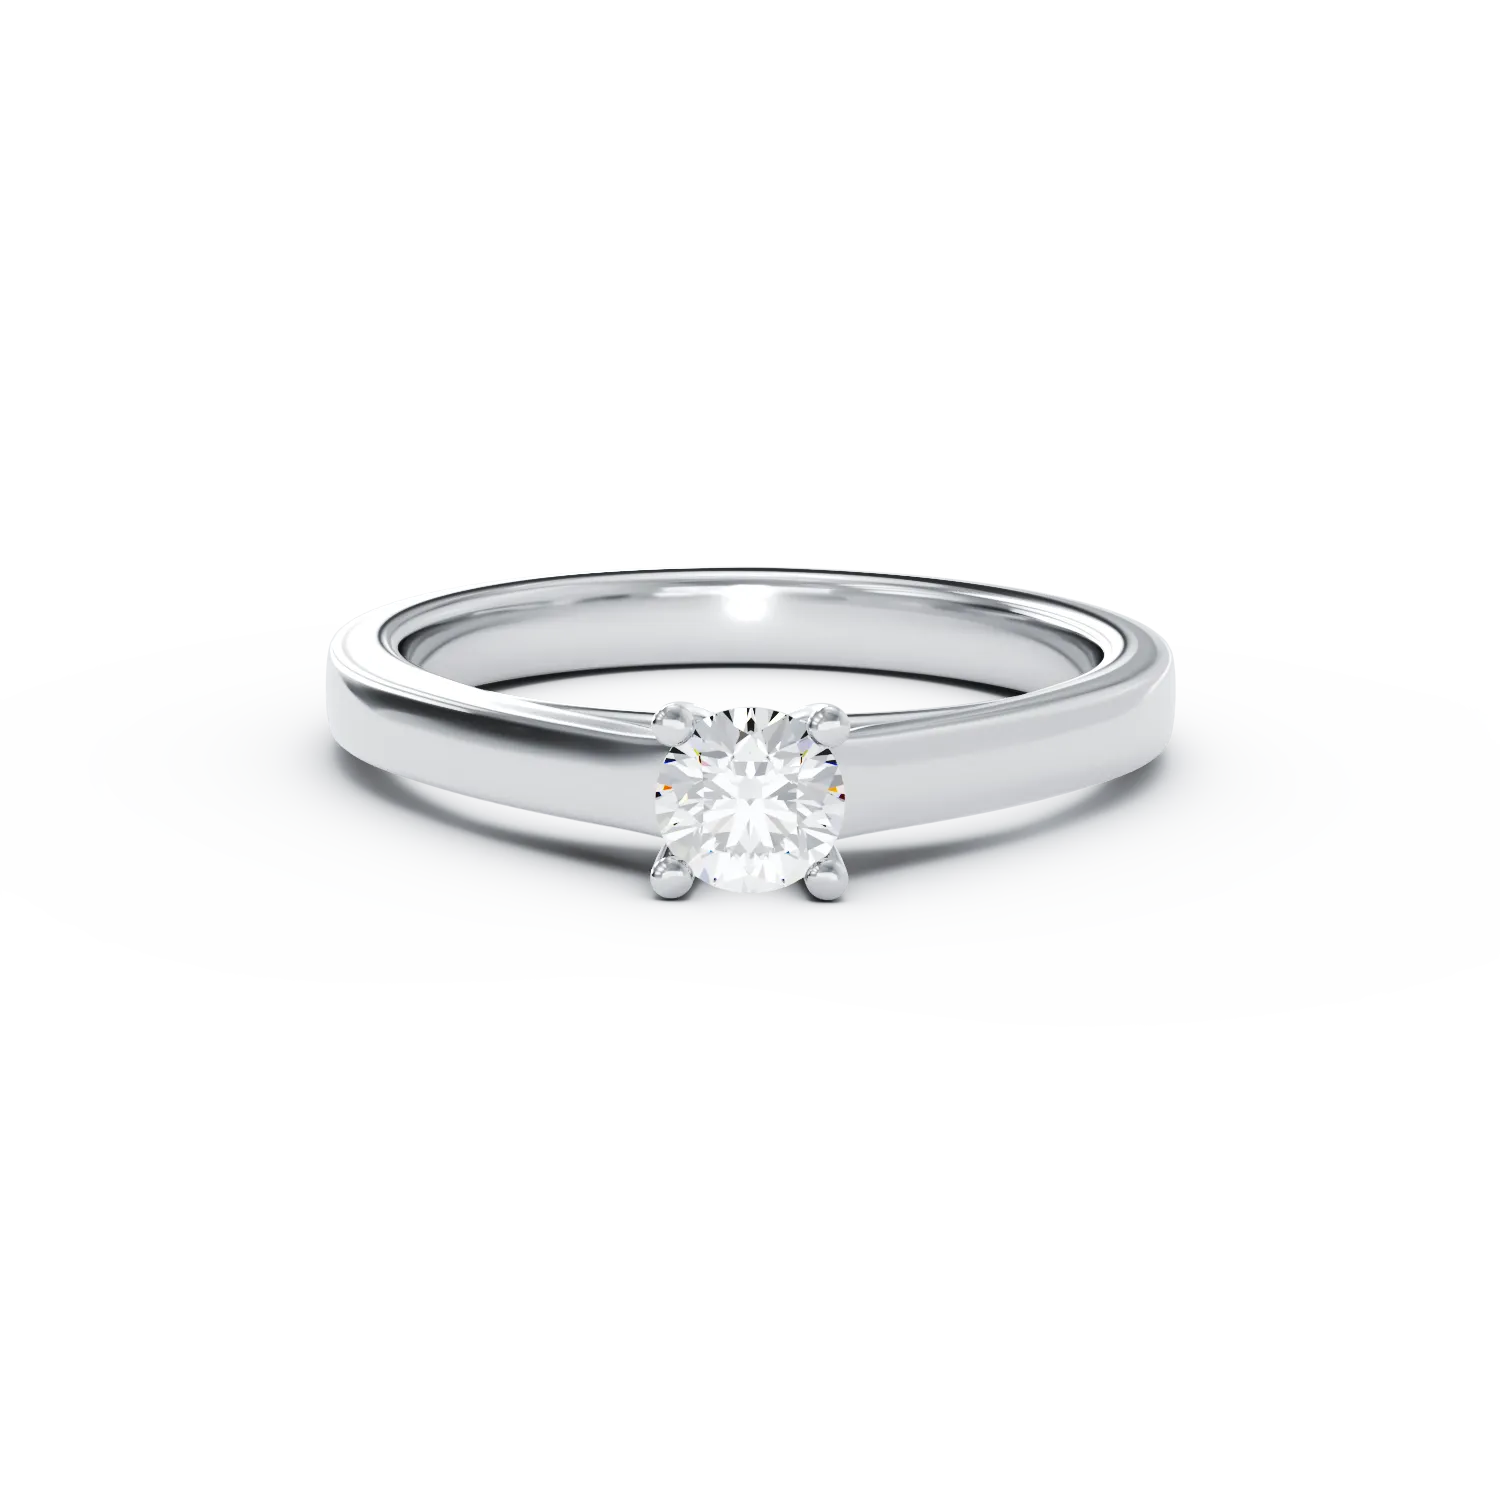 Eljegyzési gyűrű 18K-os fehér aranyból 0,24ct gyémánttal. Gramm: 3,39